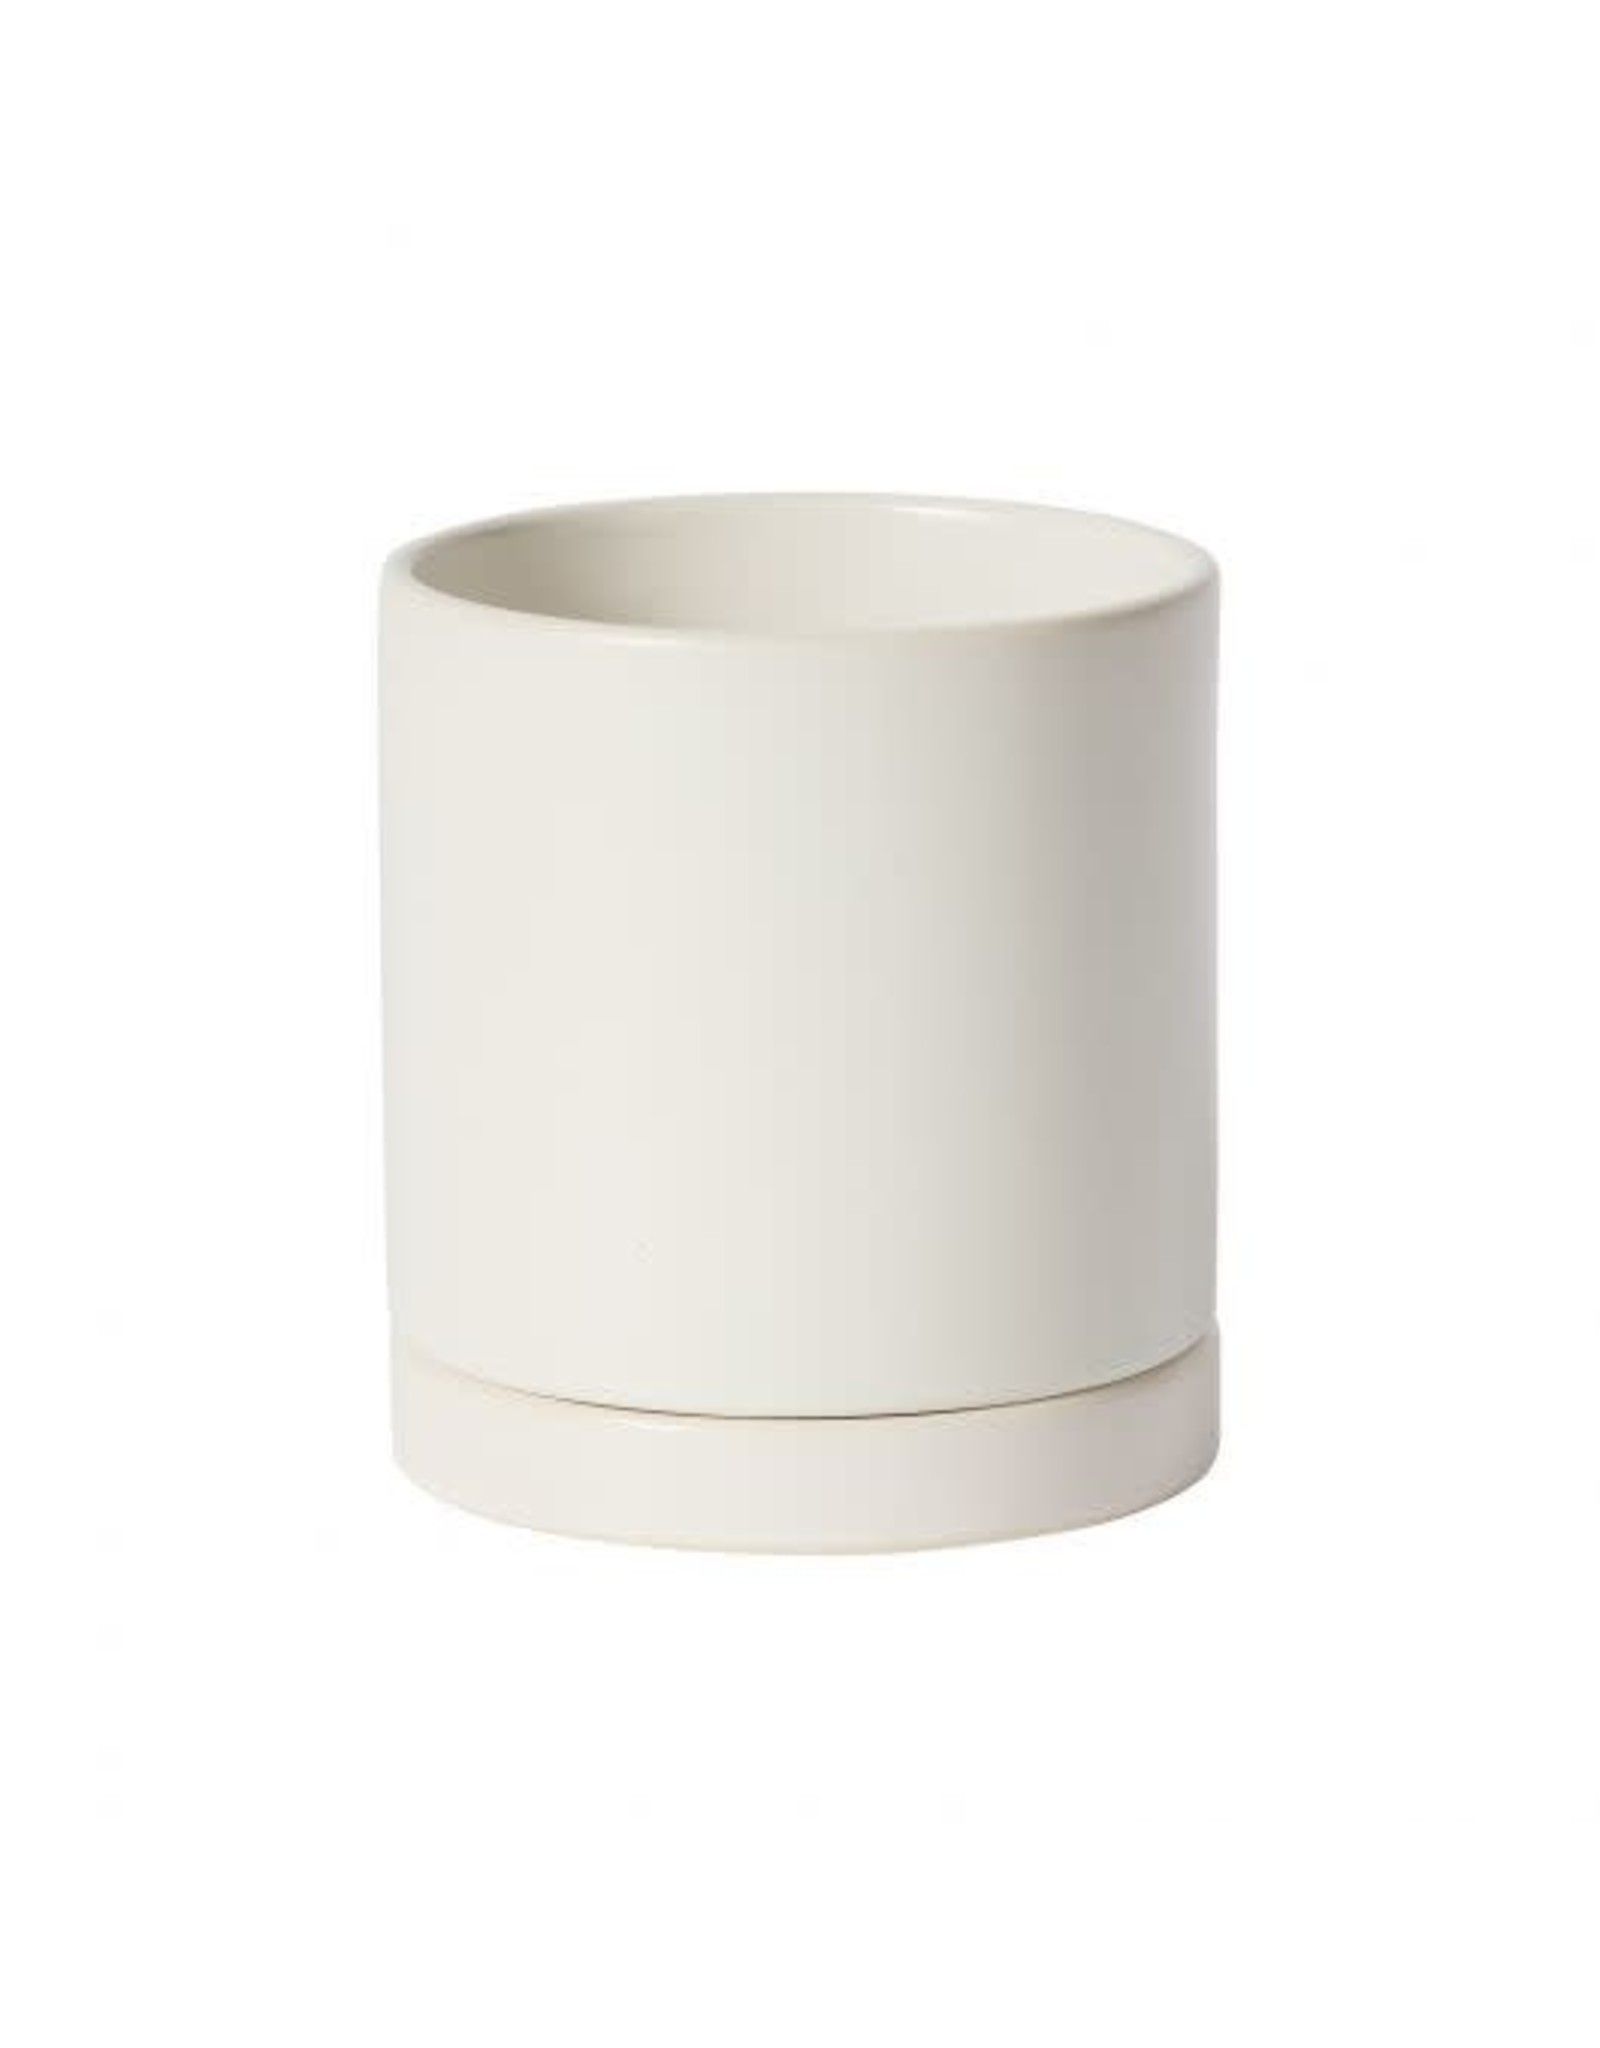 Romey Pot - 4.25" x 4.75" - White